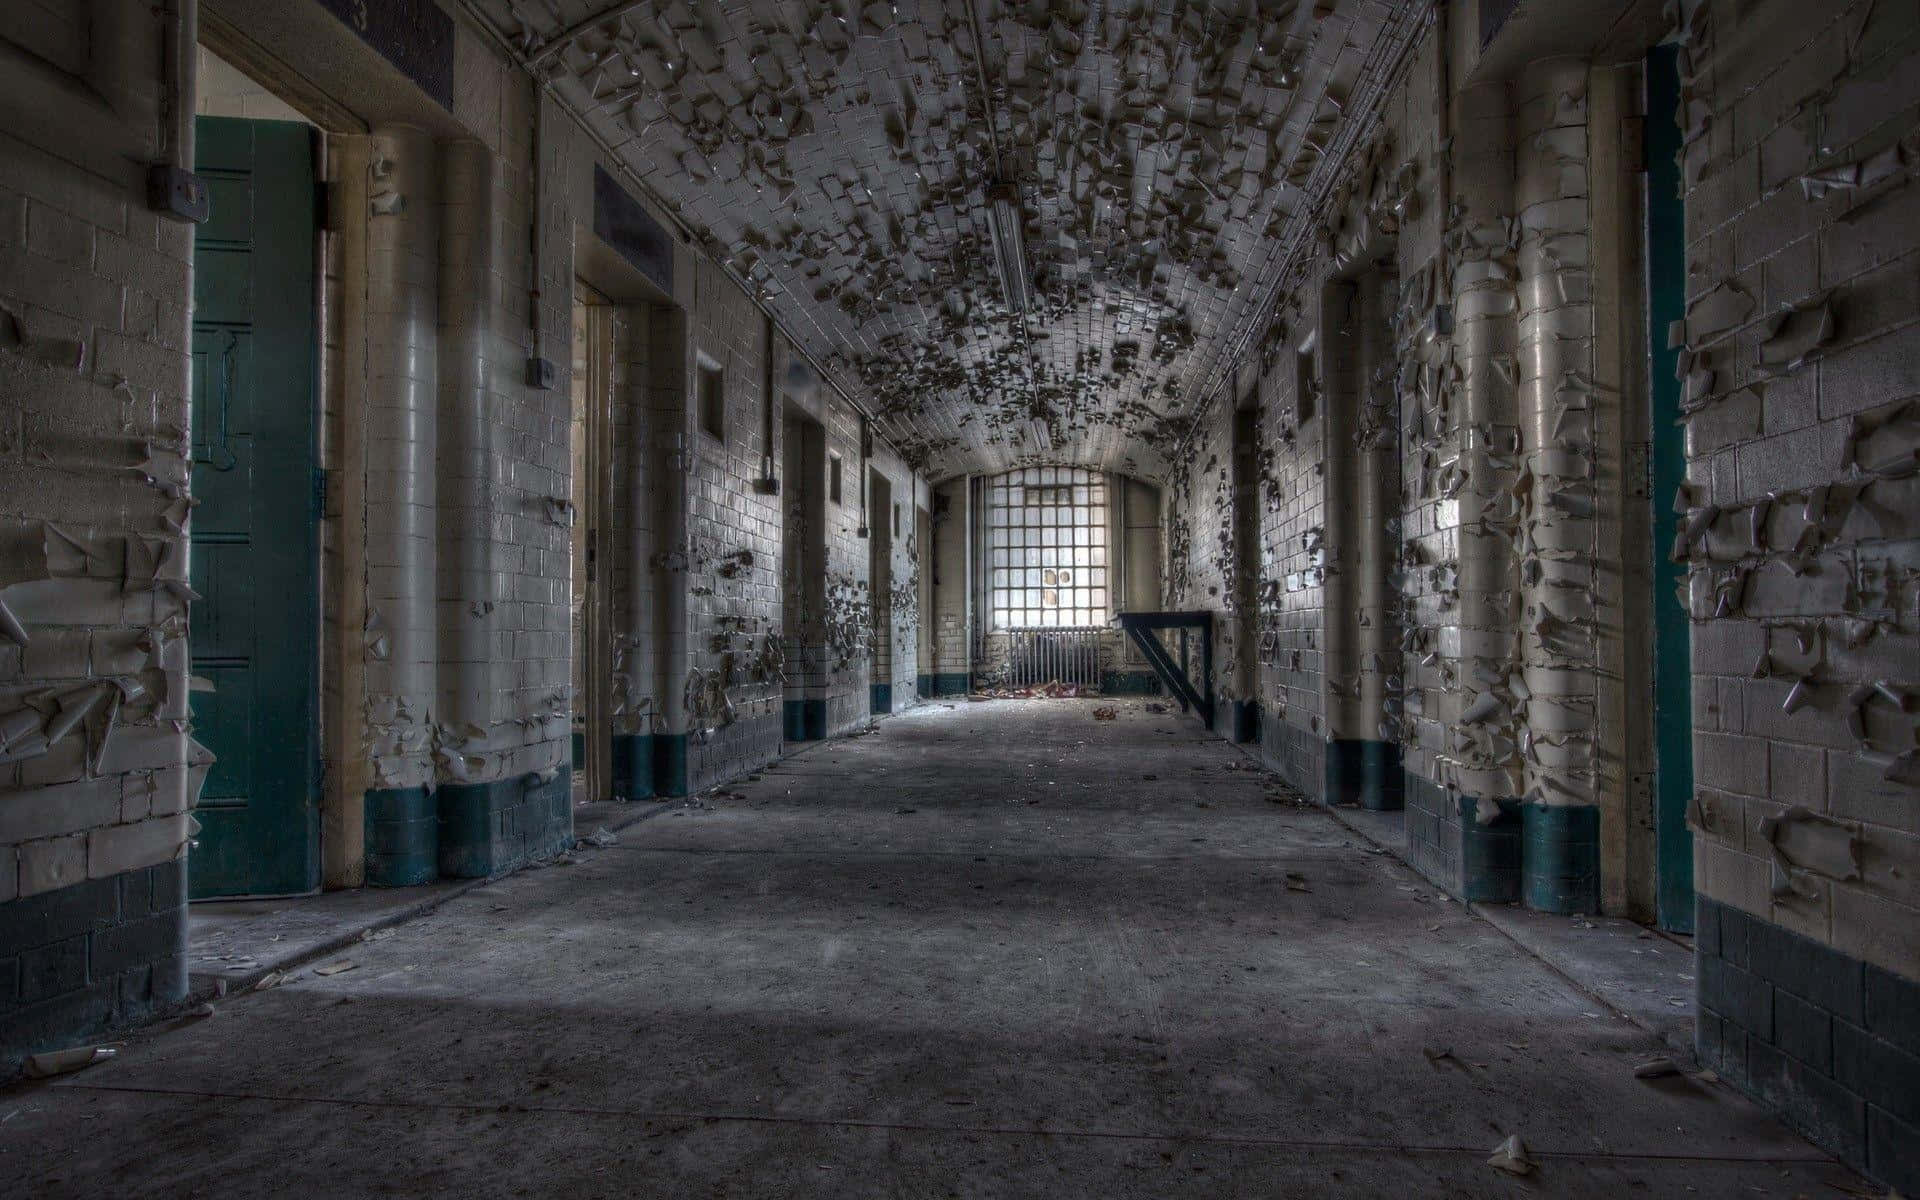 Diedunkelheit Einer Gefängniszelle Ruft Gefühle Von Verzweiflung Und Hoffnungslosigkeit Hervor.